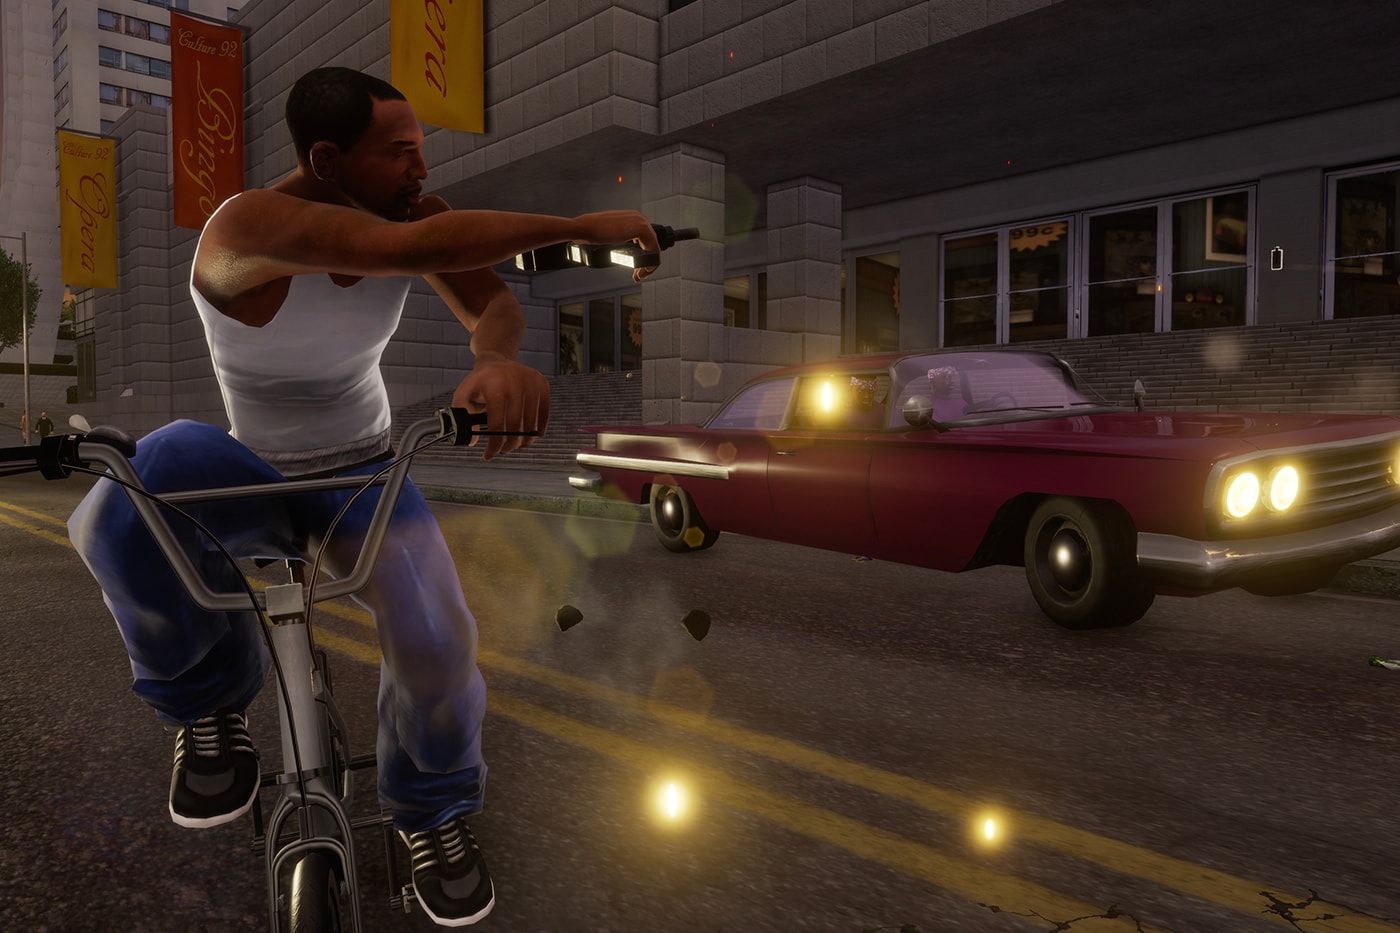 Grand Theft Auto: San Andreas – The Definitive Edition Comparison Video 